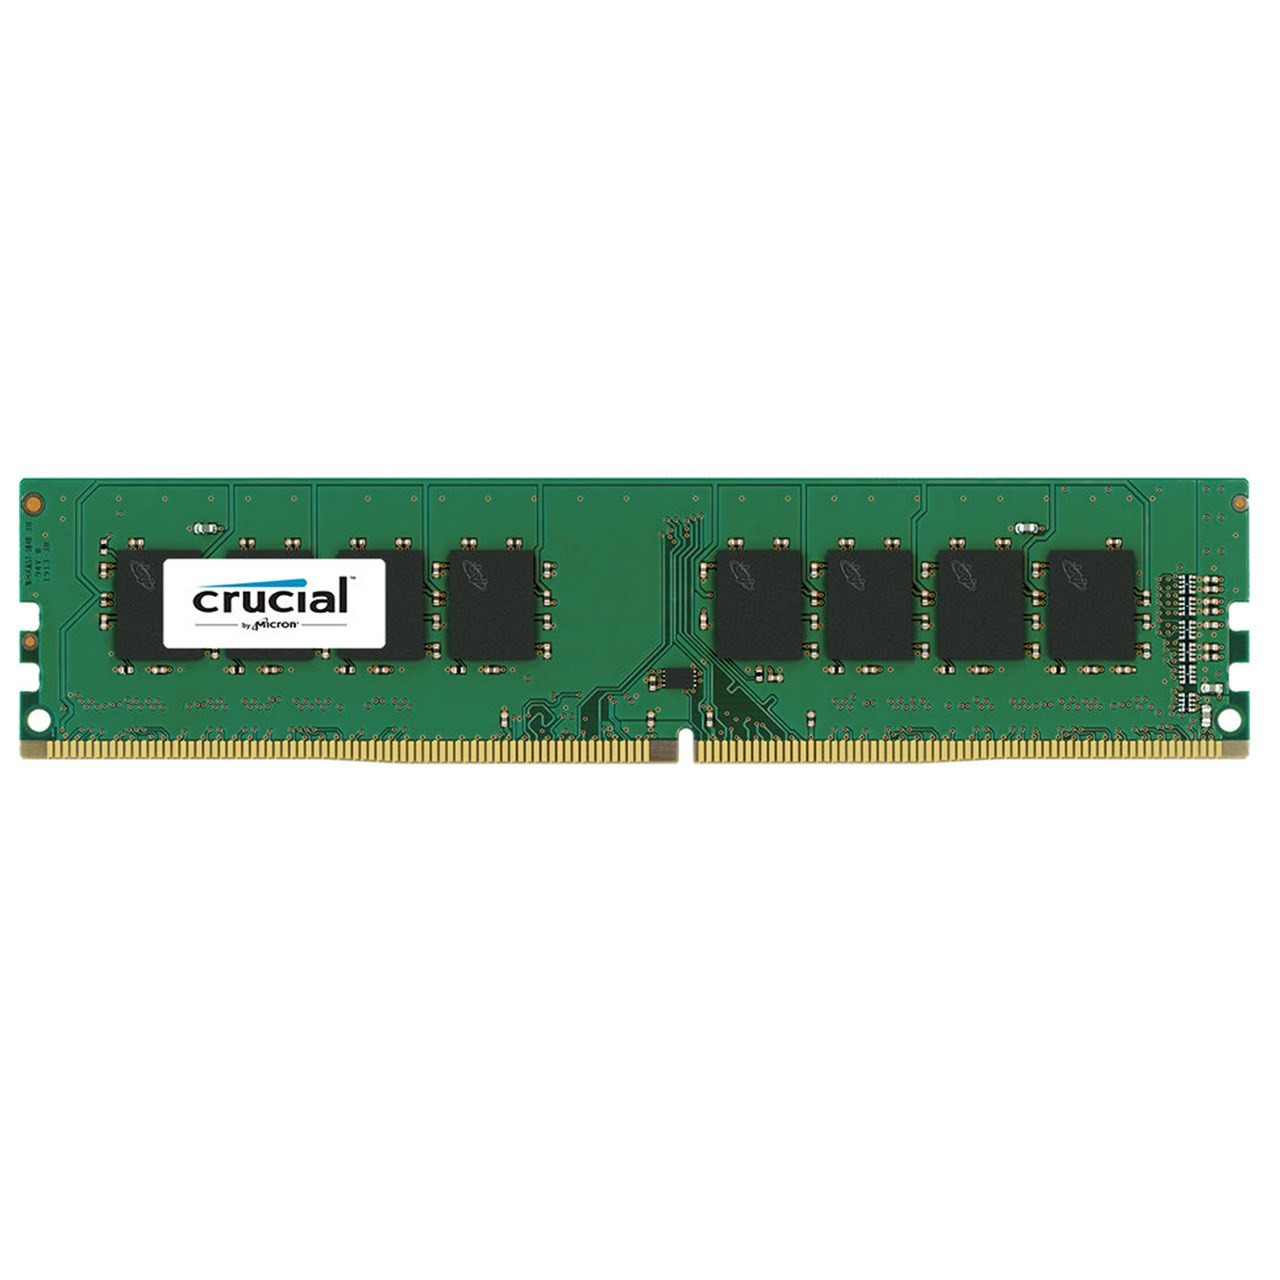 رم دسکتاپ DDR4 تک کاناله 2400 مگاهرتز کروشیال ظرفیت 8 گیگابایت